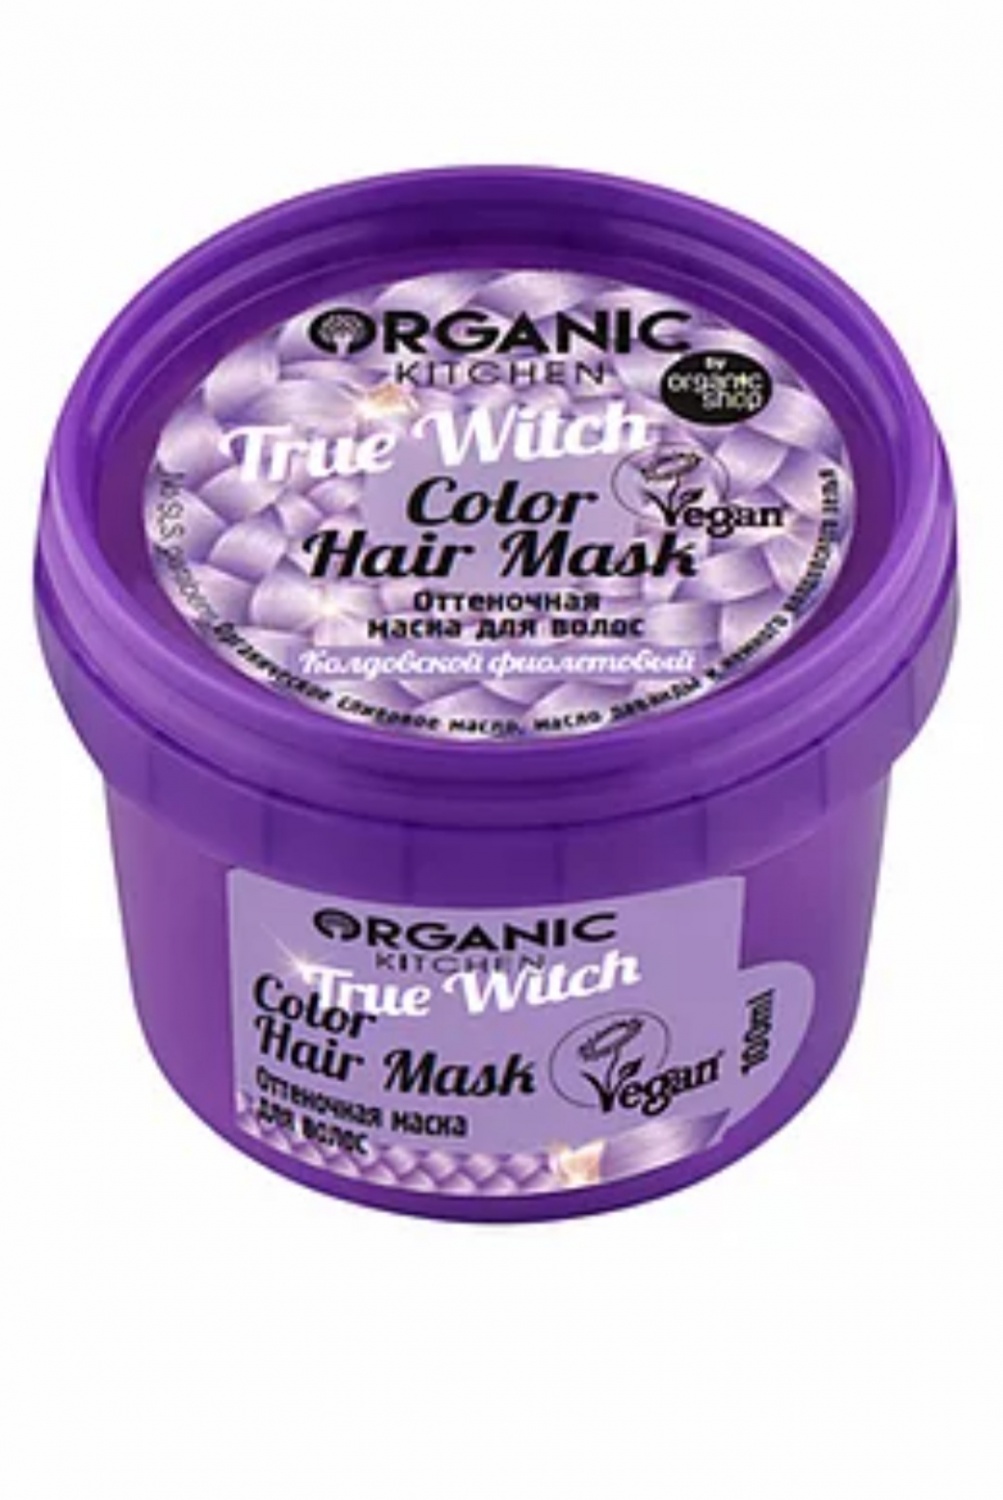 Оттеночная маска для волос Organic kitchen Колдовской фиолетовый "True Witch"